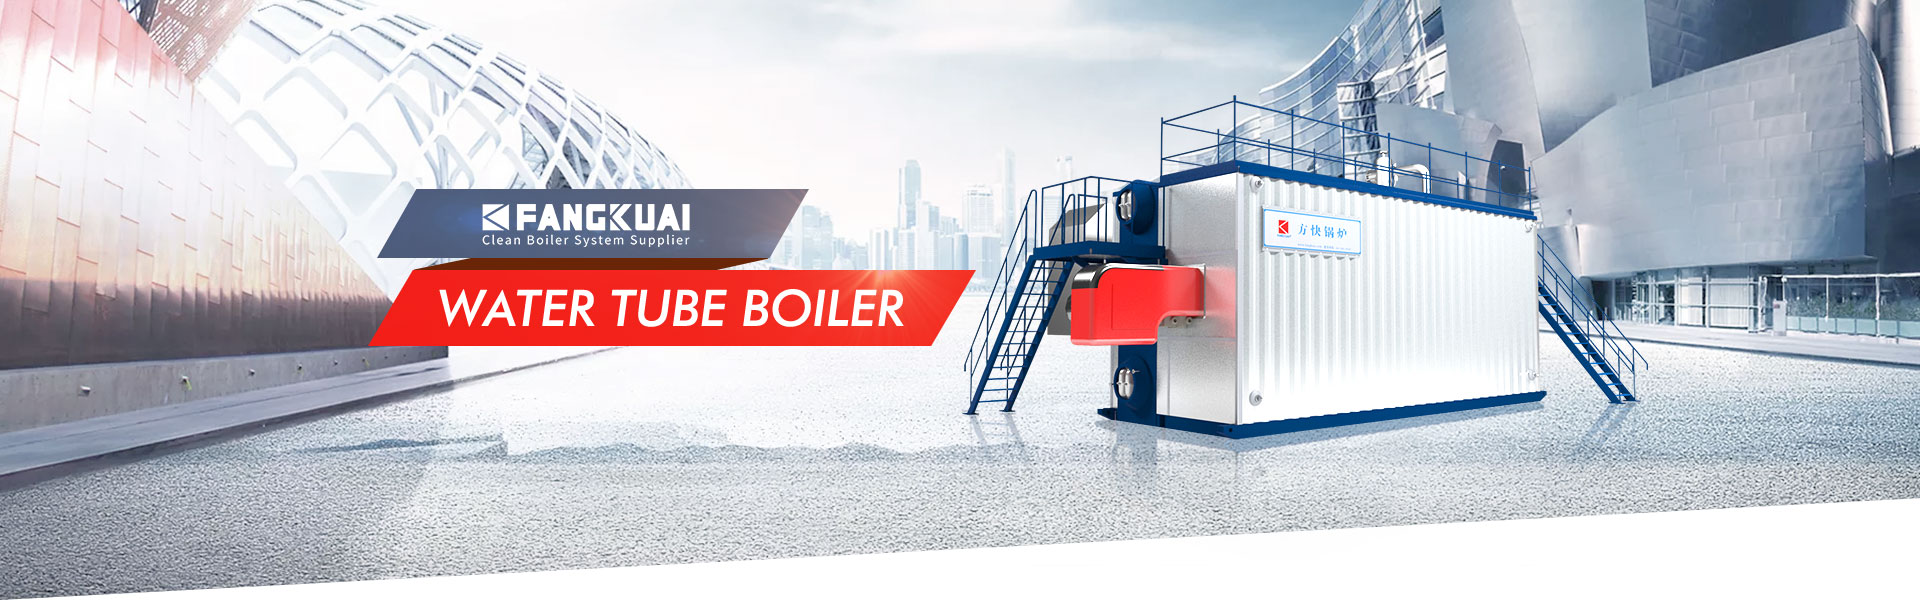 Water Tube Hot Water Boiler